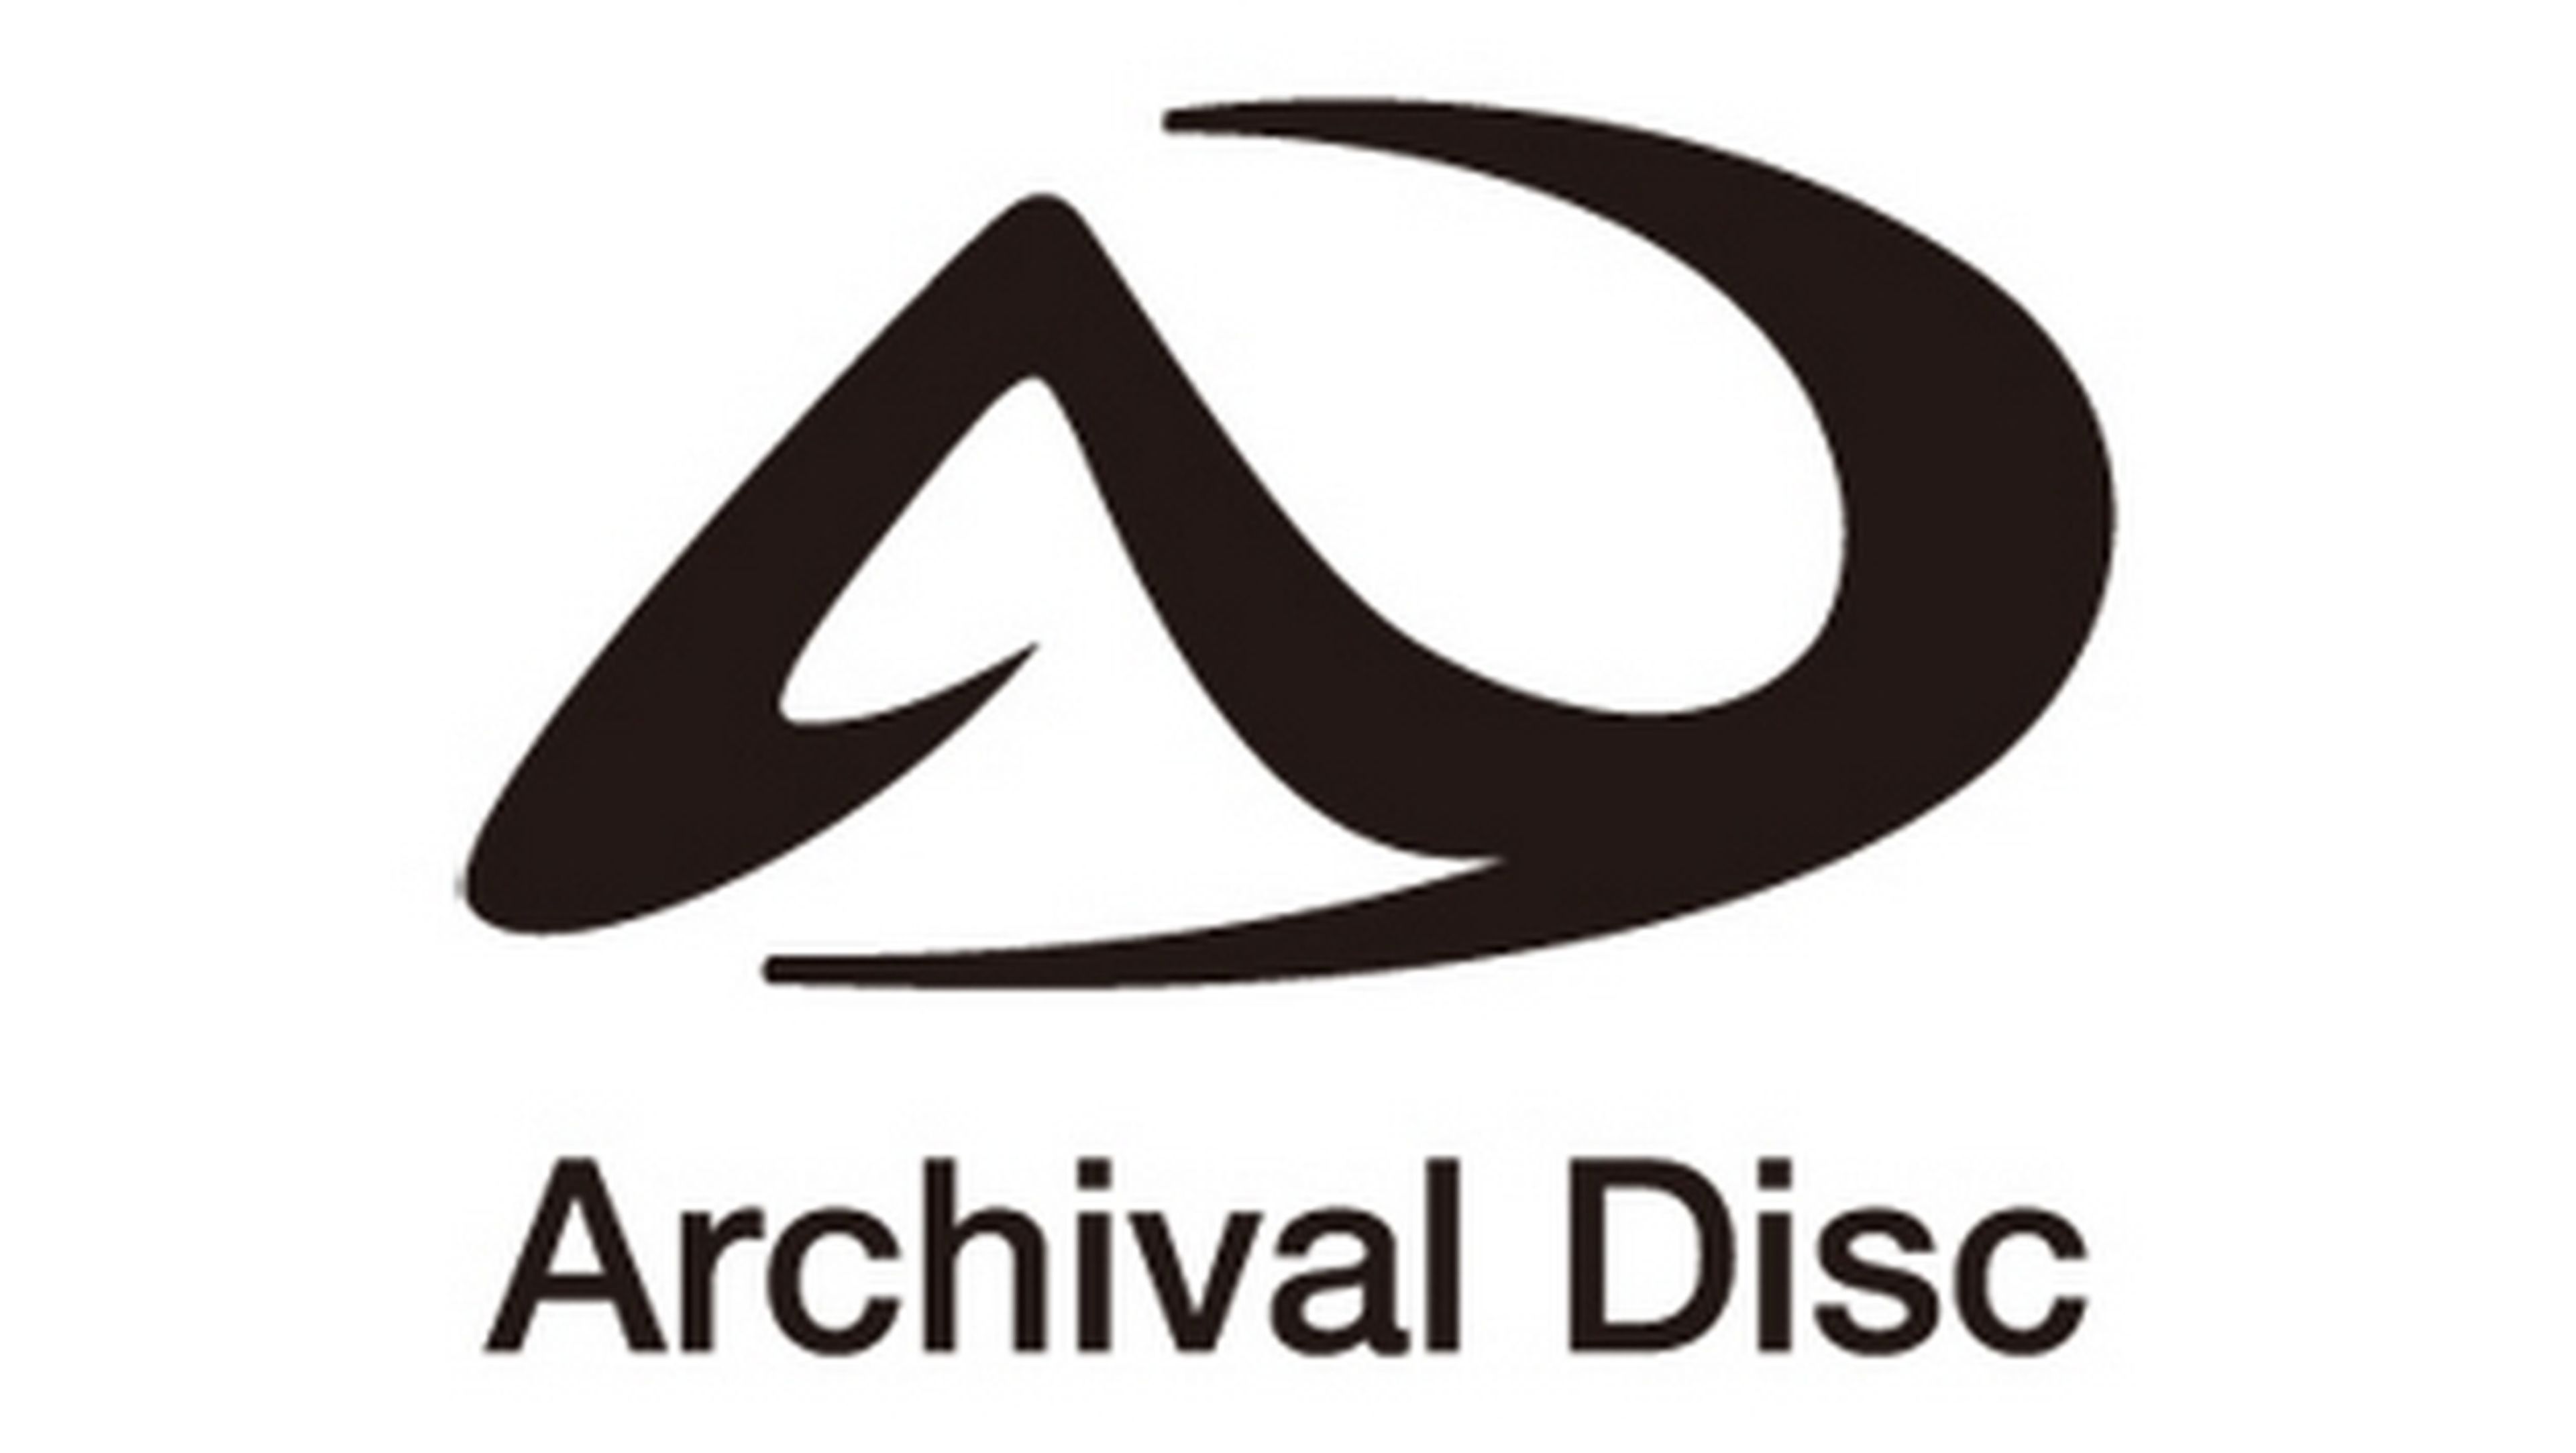 Sony y Panasonic presentan Archival Disc, el sucesor del blu-ray, para almacenar contenido en la nube y vídeo en resolución UHD o 4K